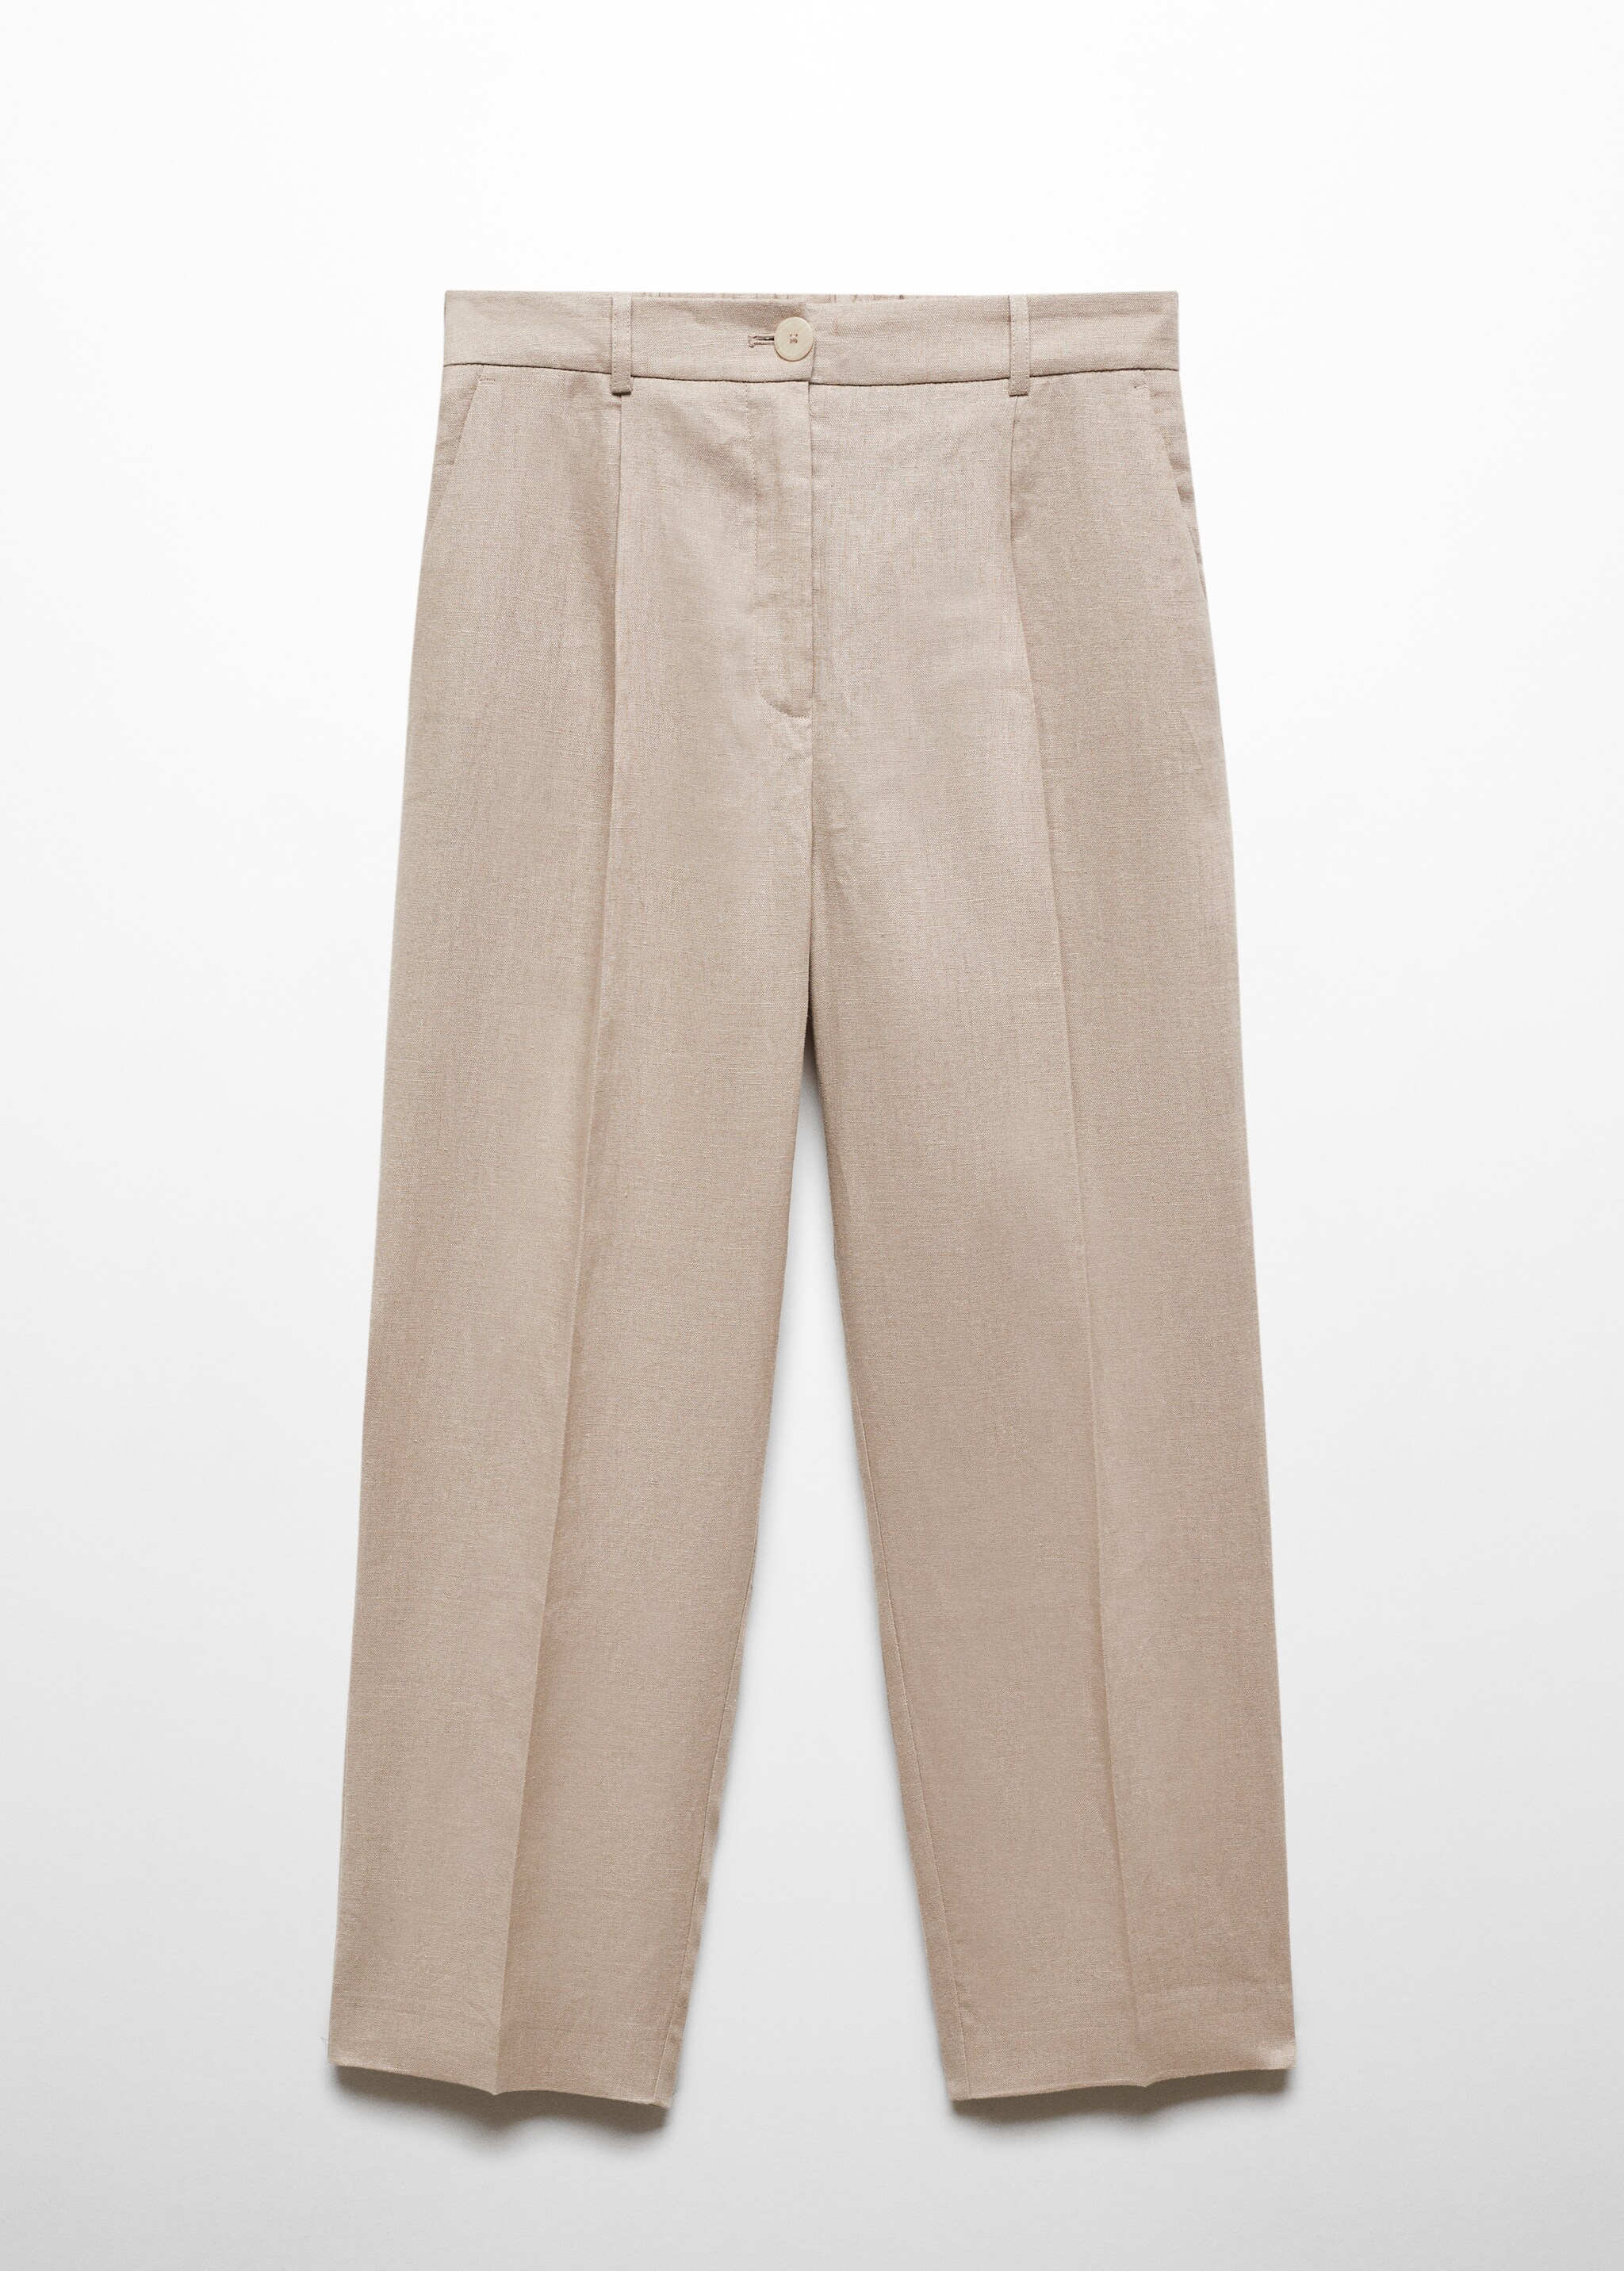 Pantalon 100 % lin droit - Article sans modèle